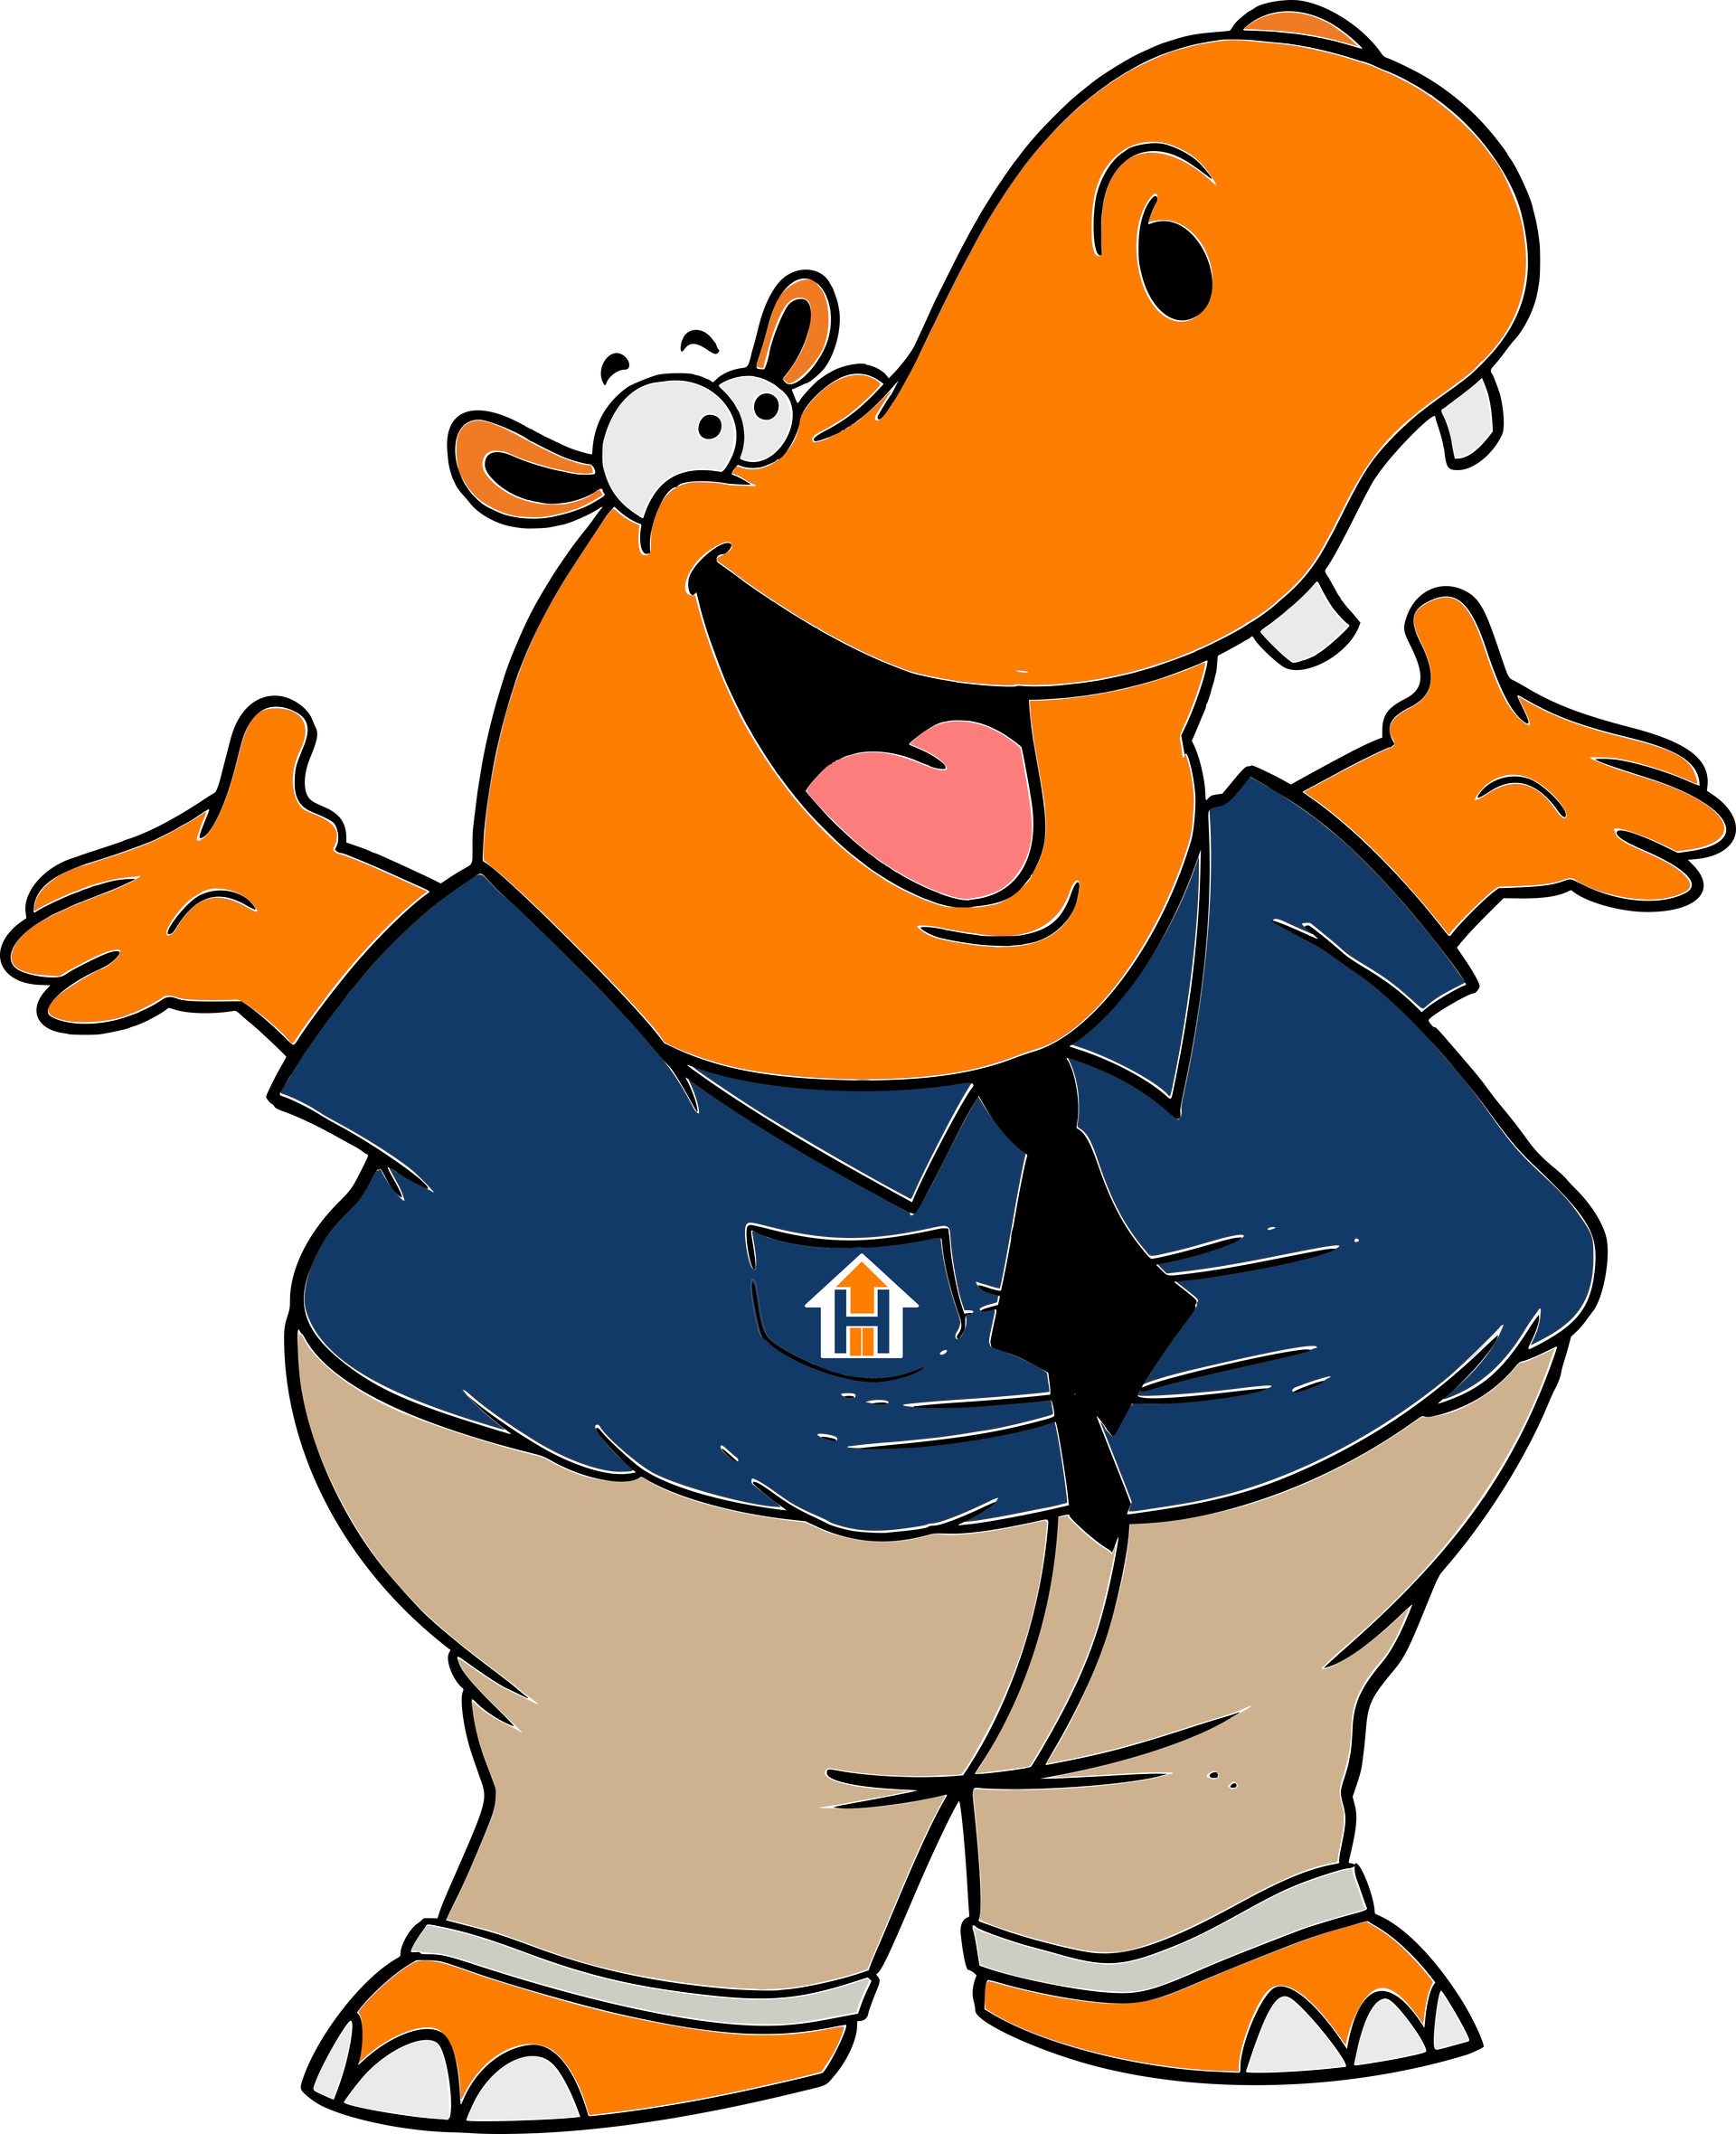 Hubbs the Hippo - Housing Hub's mascot